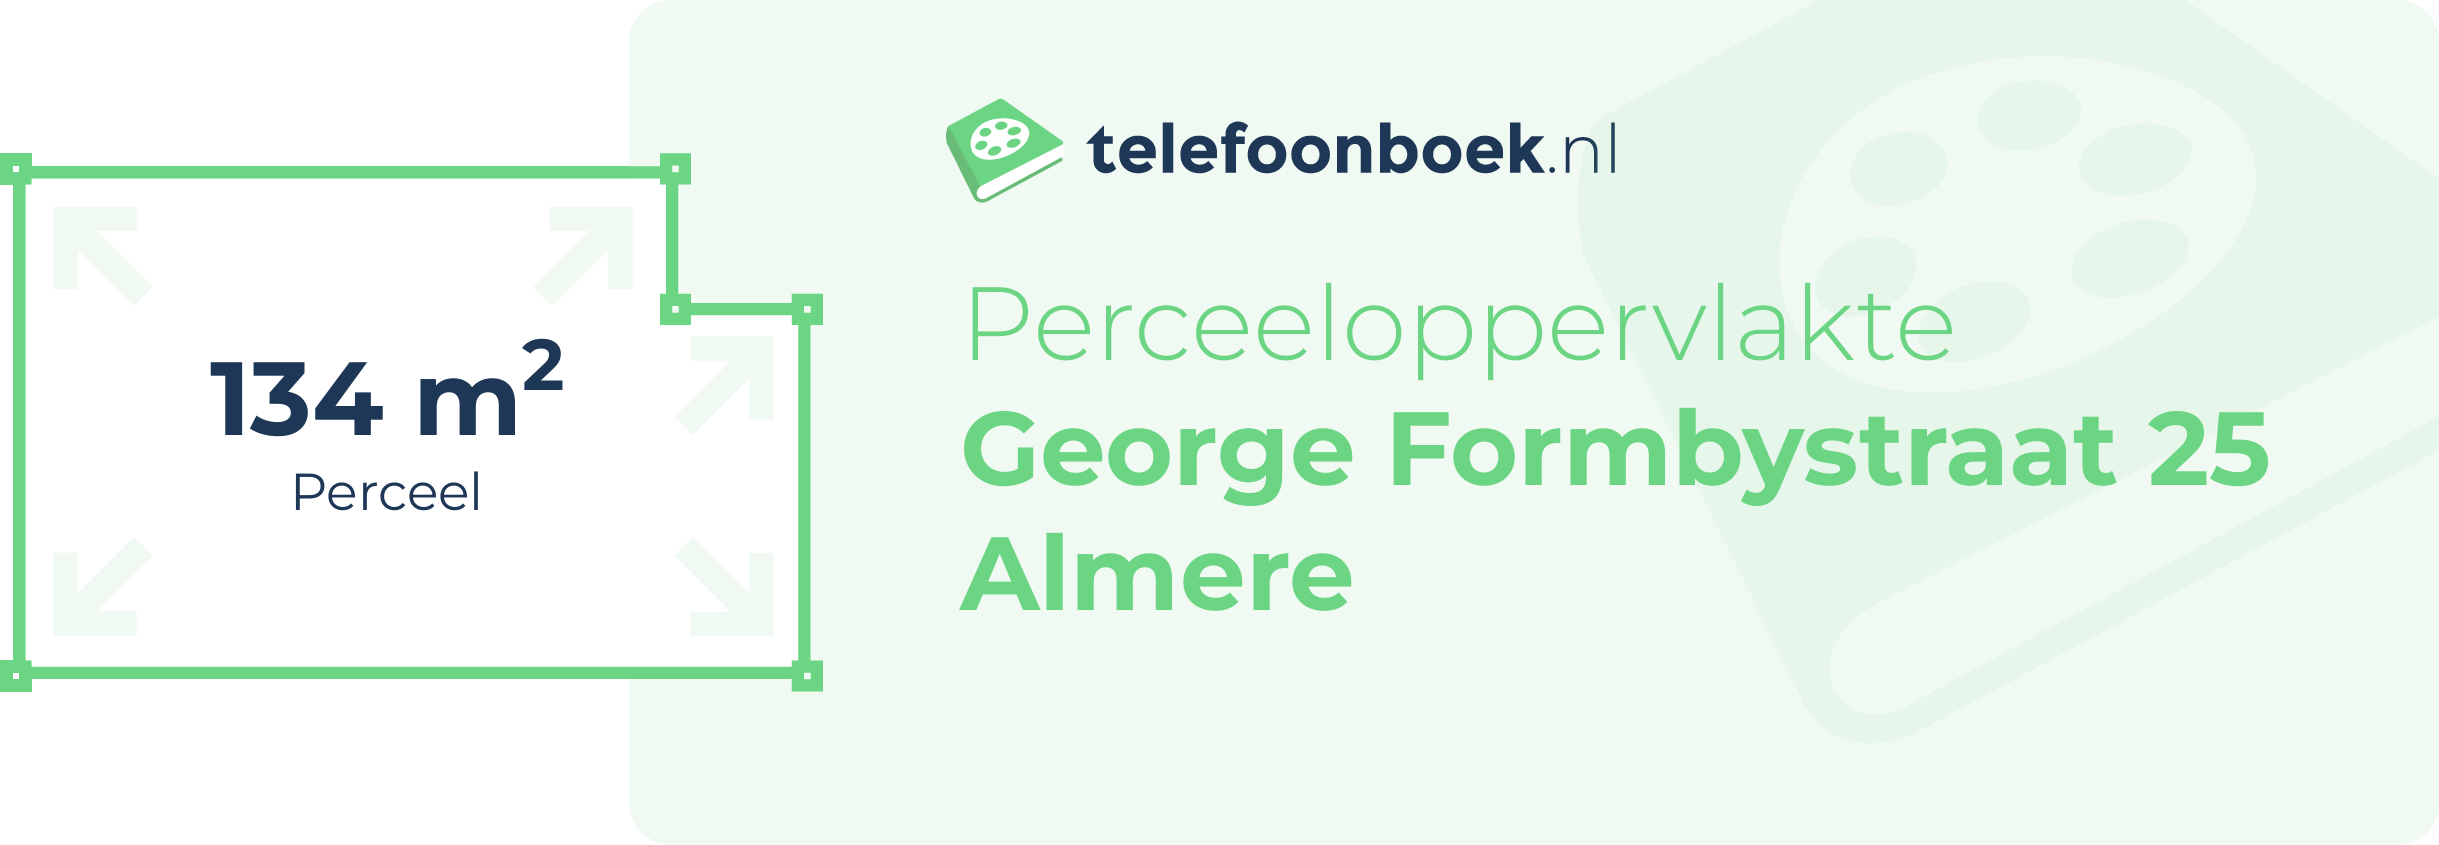 Perceeloppervlakte George Formbystraat 25 Almere